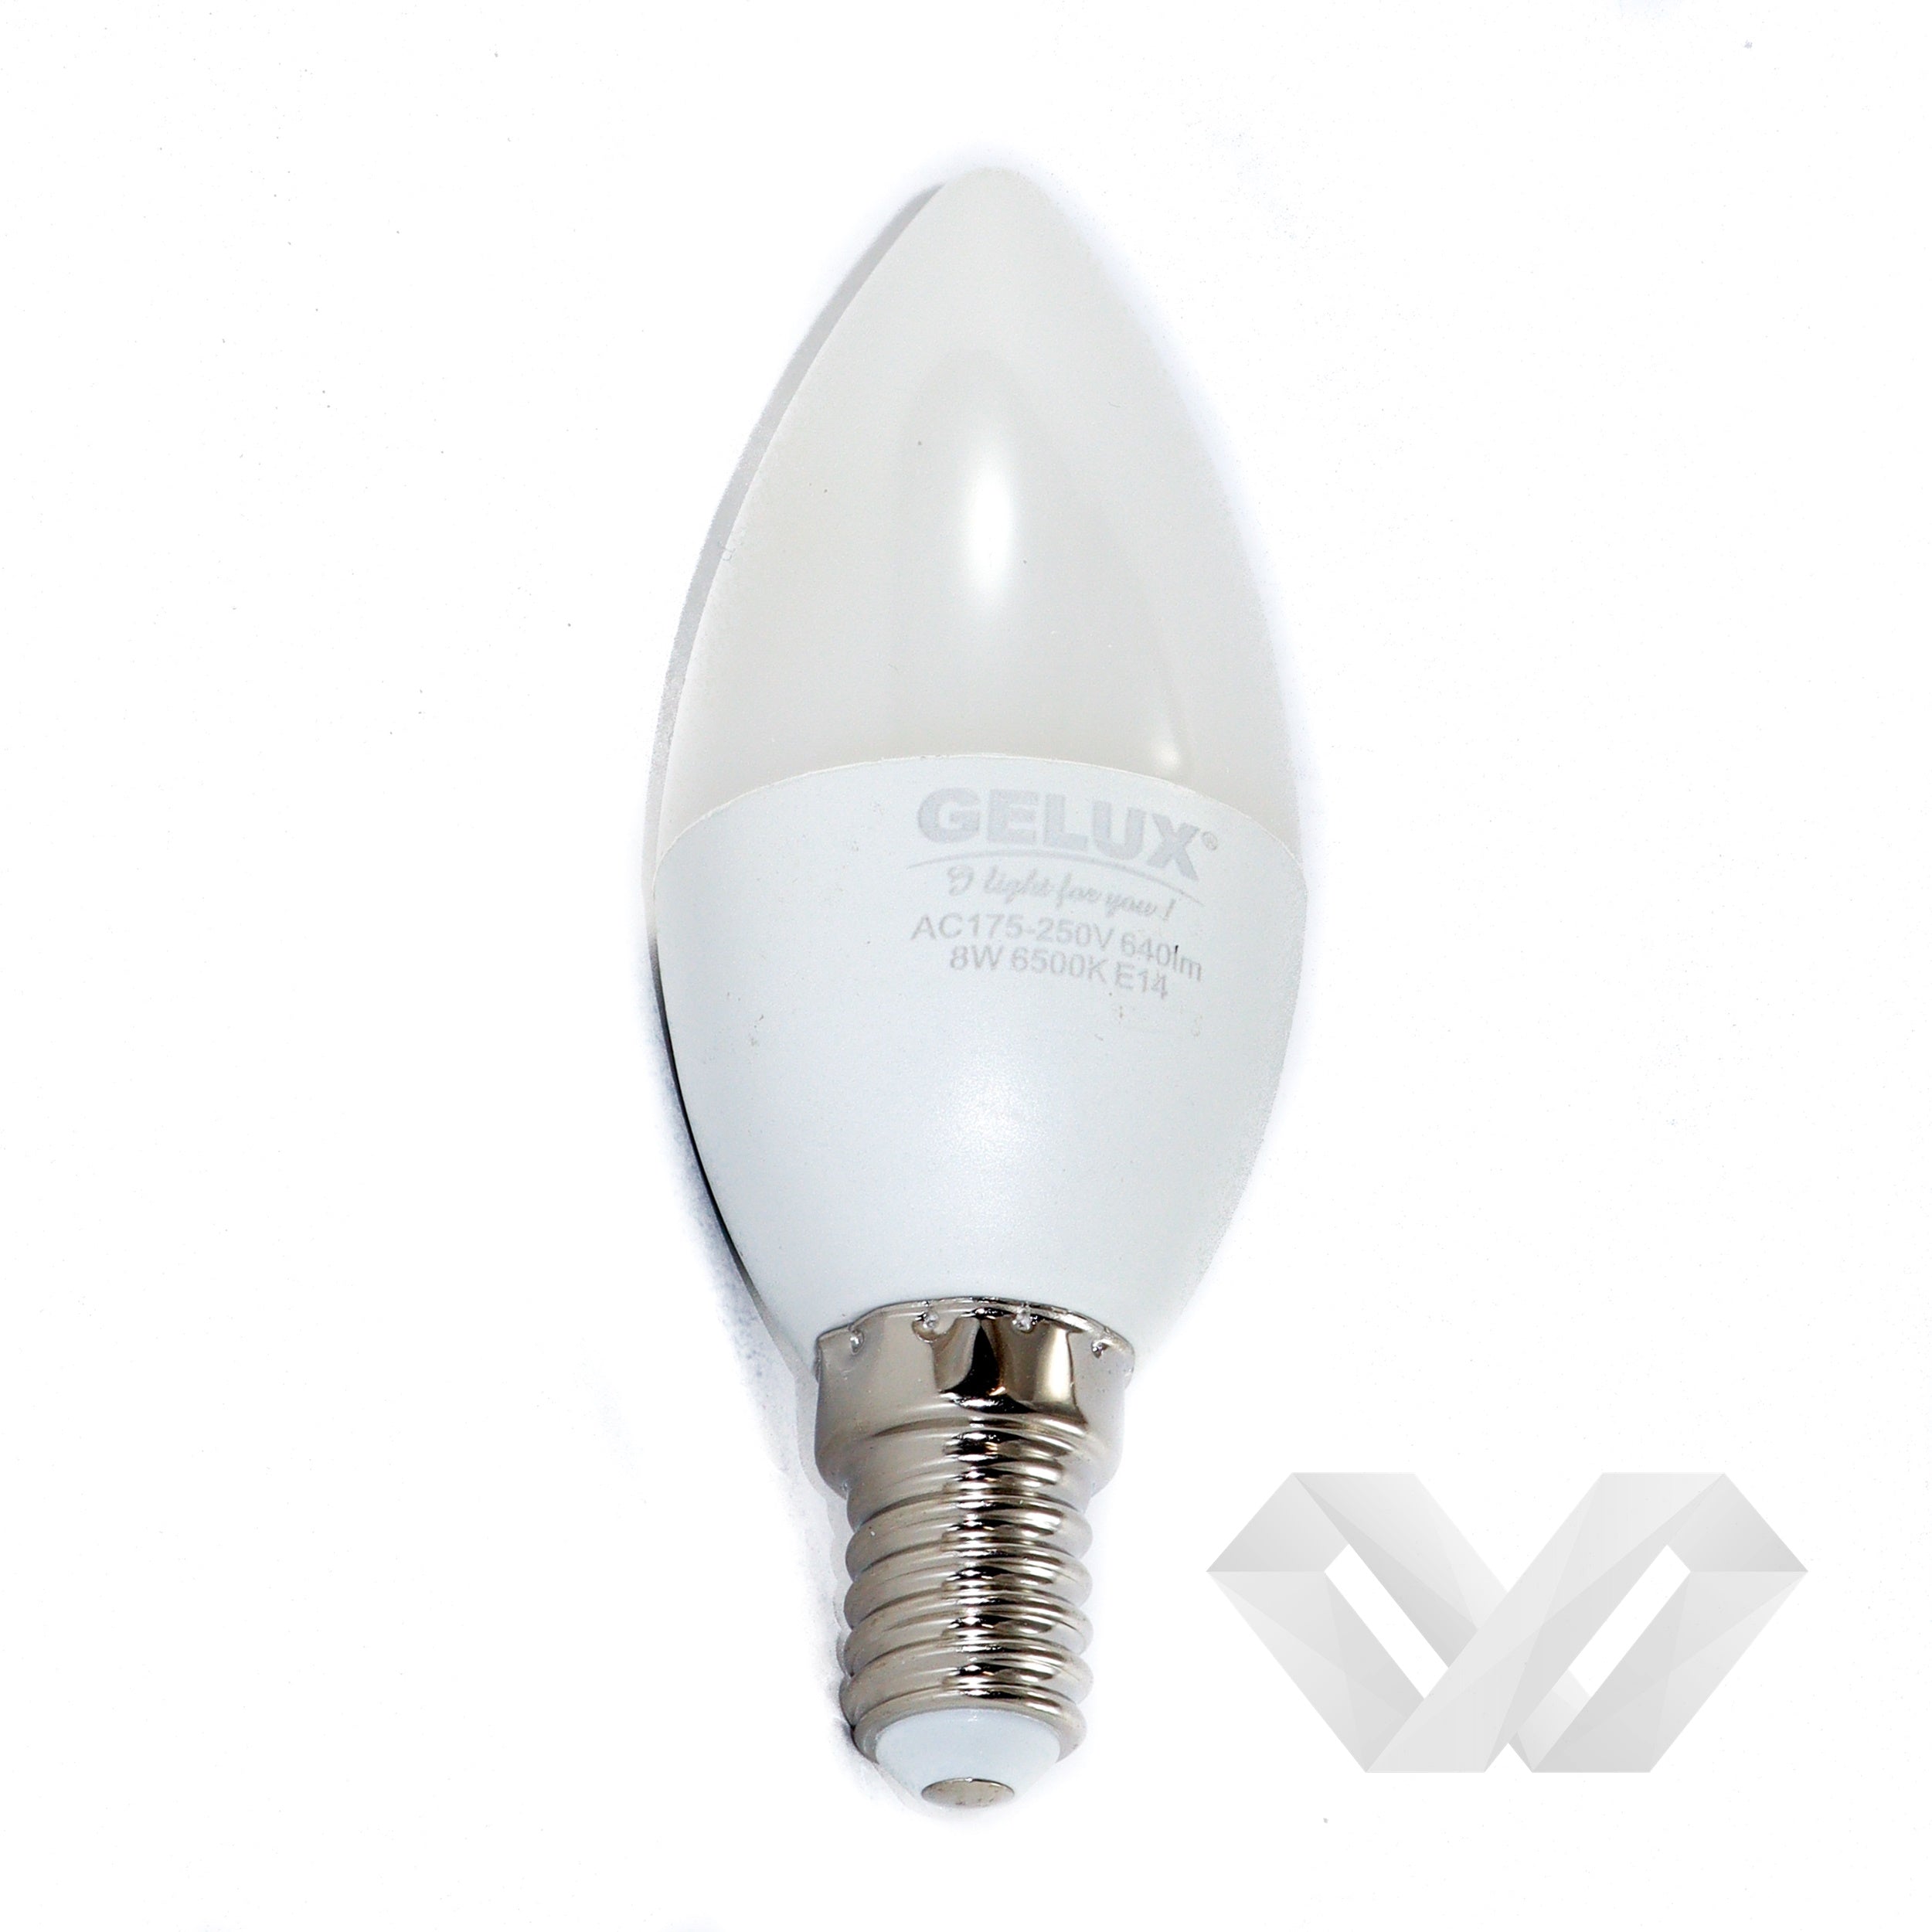 Bec LED Lumanare 5W E14 ECOLED, echivalent 40W lumina rece, Gelux